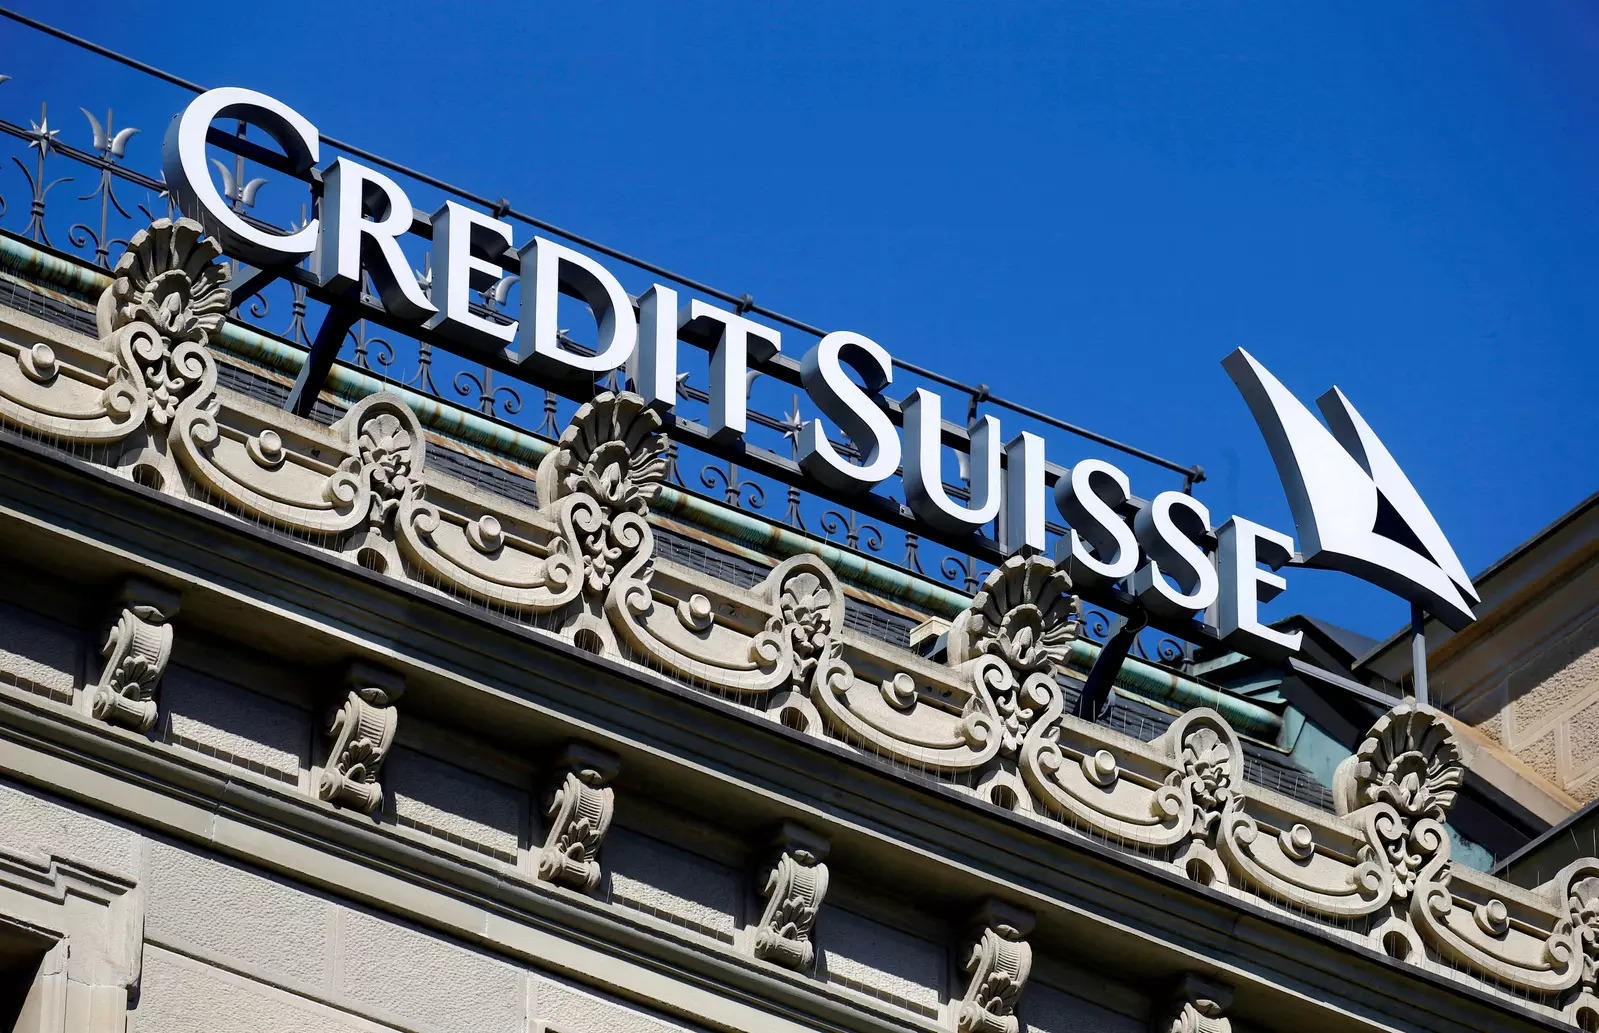 Criza financiară a trecut Oceanul! Acțiunile Credit Suisse s-au prăbușit! A intervenit Banca Elveției